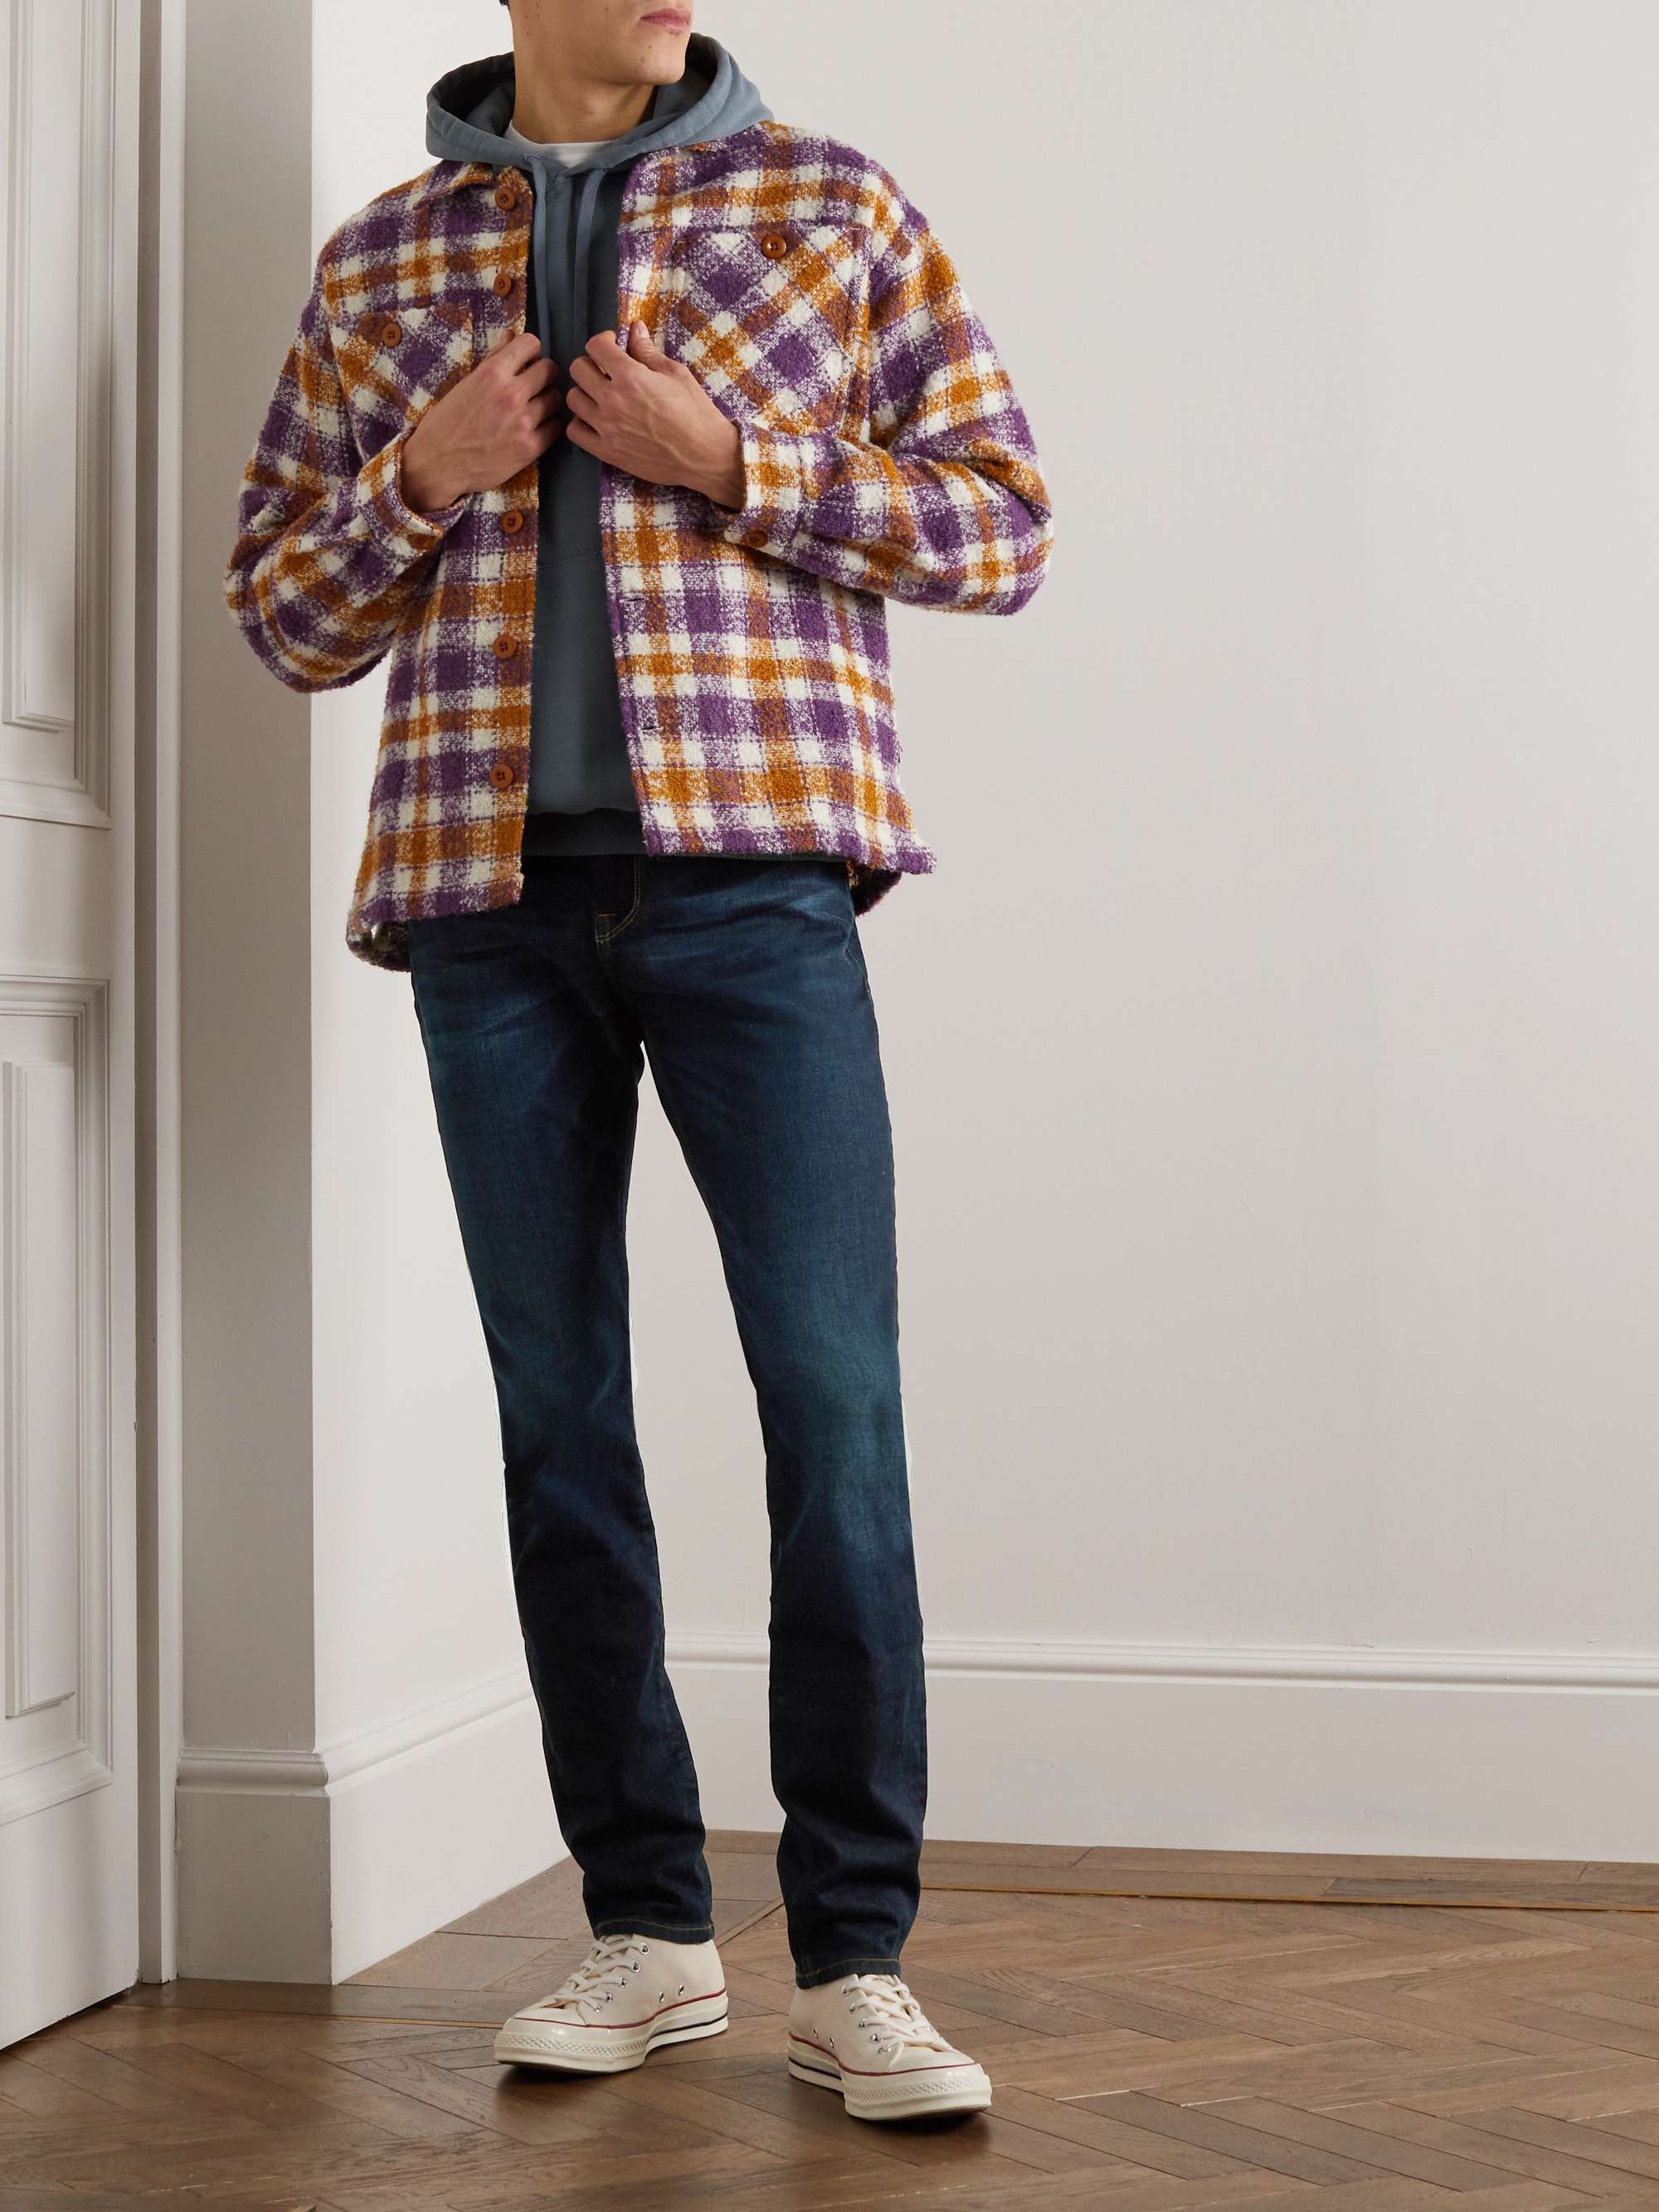 FRAME L'Homme Skinny-Fit Stretch-Denim Jeans for Men | MR PORTER